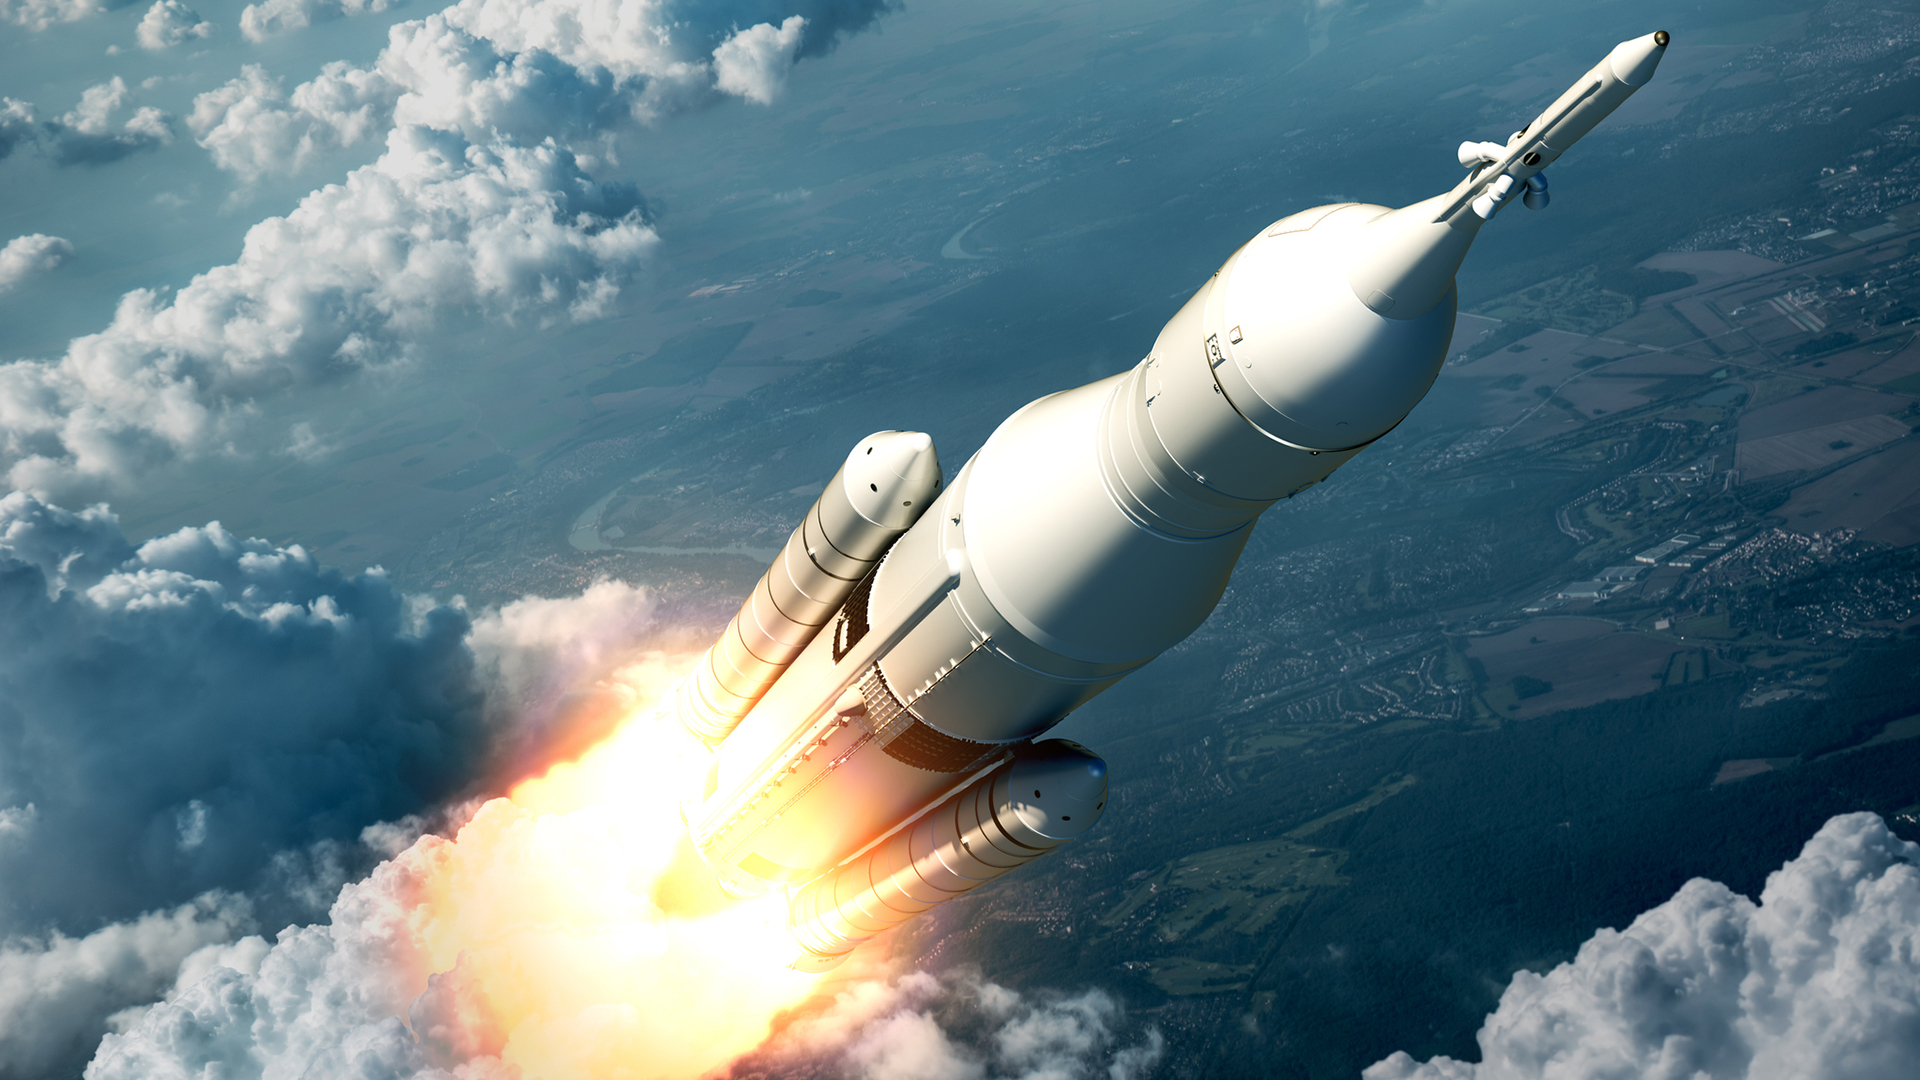 Das von der NASA finanzierte Raketentriebwerksprojekt treibt die Raumfahrt in neue Höhen